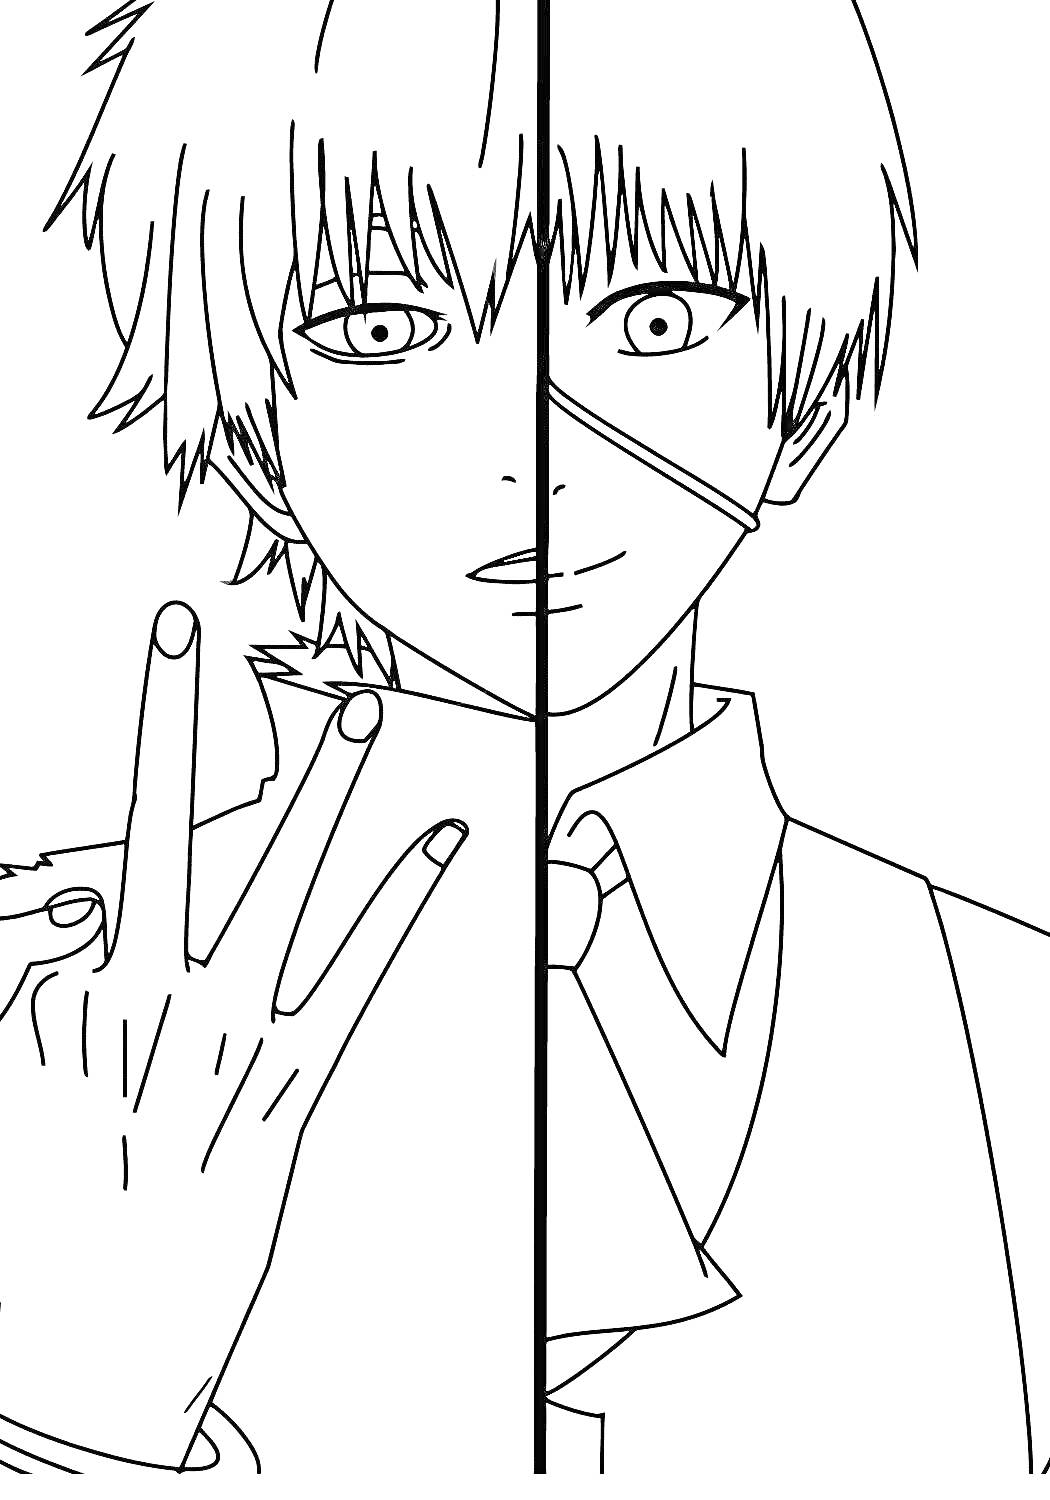 Раскраска Раздвоение личности героя аниме Токийский гуль - портрет с разными выражениями лица и жестом руки.